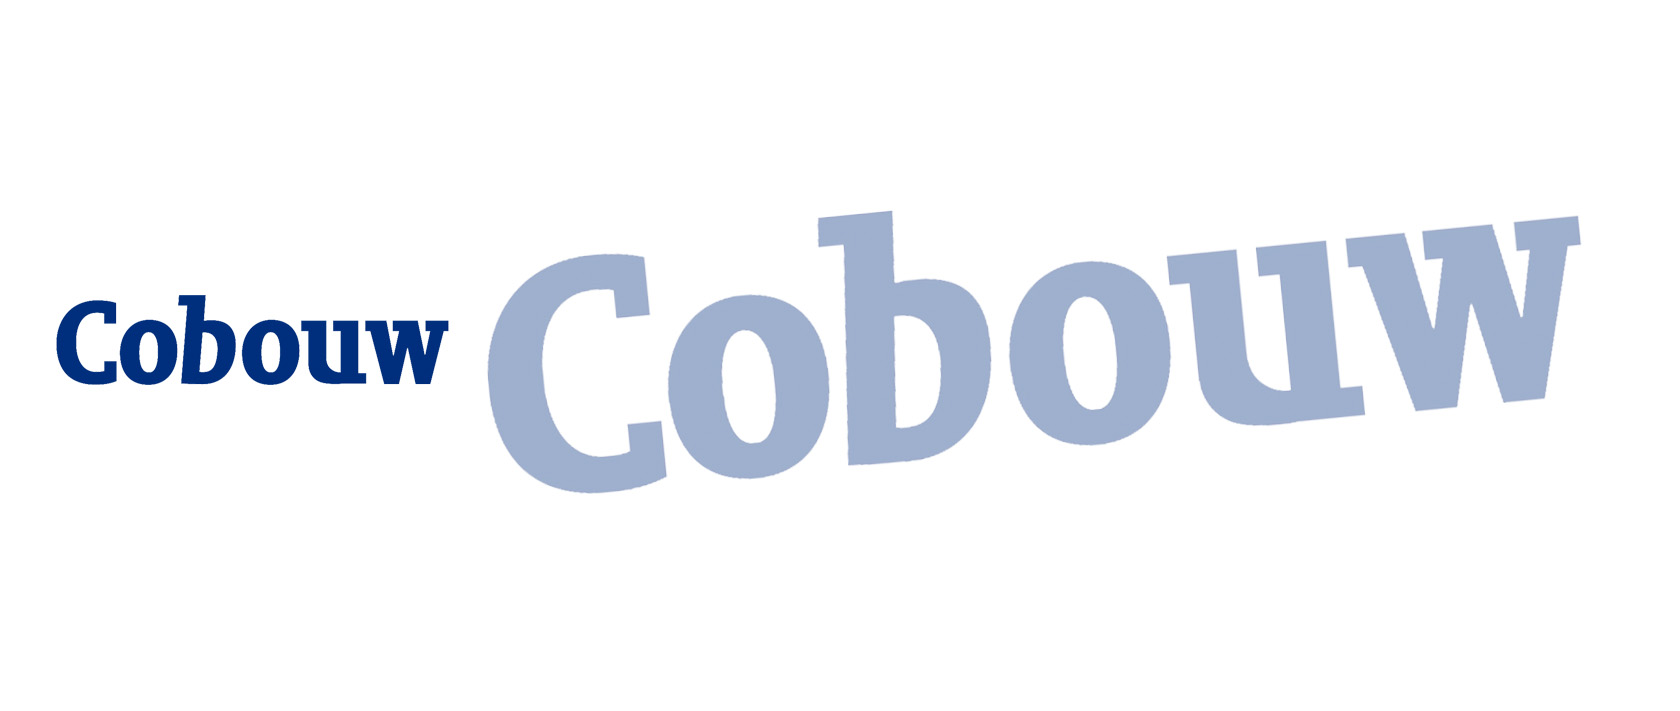 Cobouw – Startups in 2016